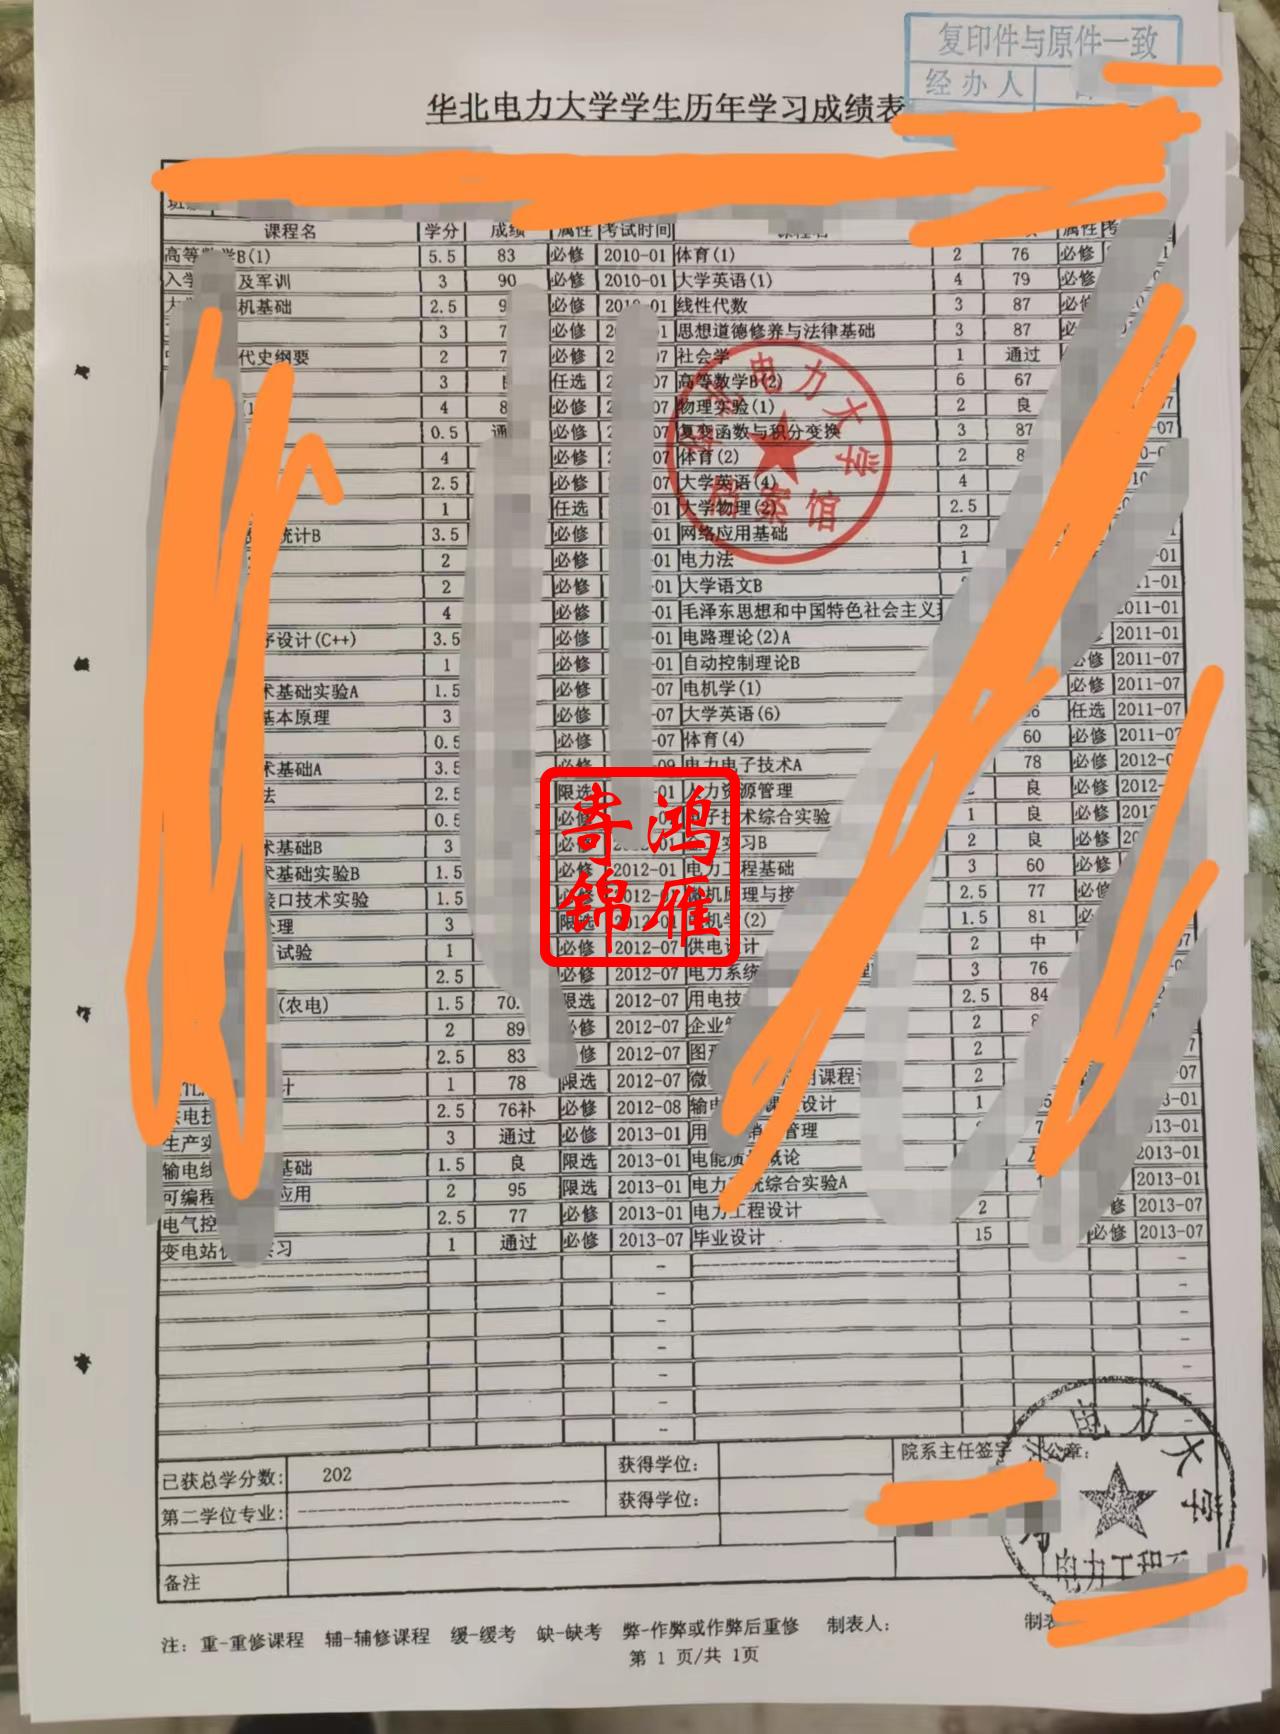 华北电力大学保定校区中文成绩单打印案例.jpg